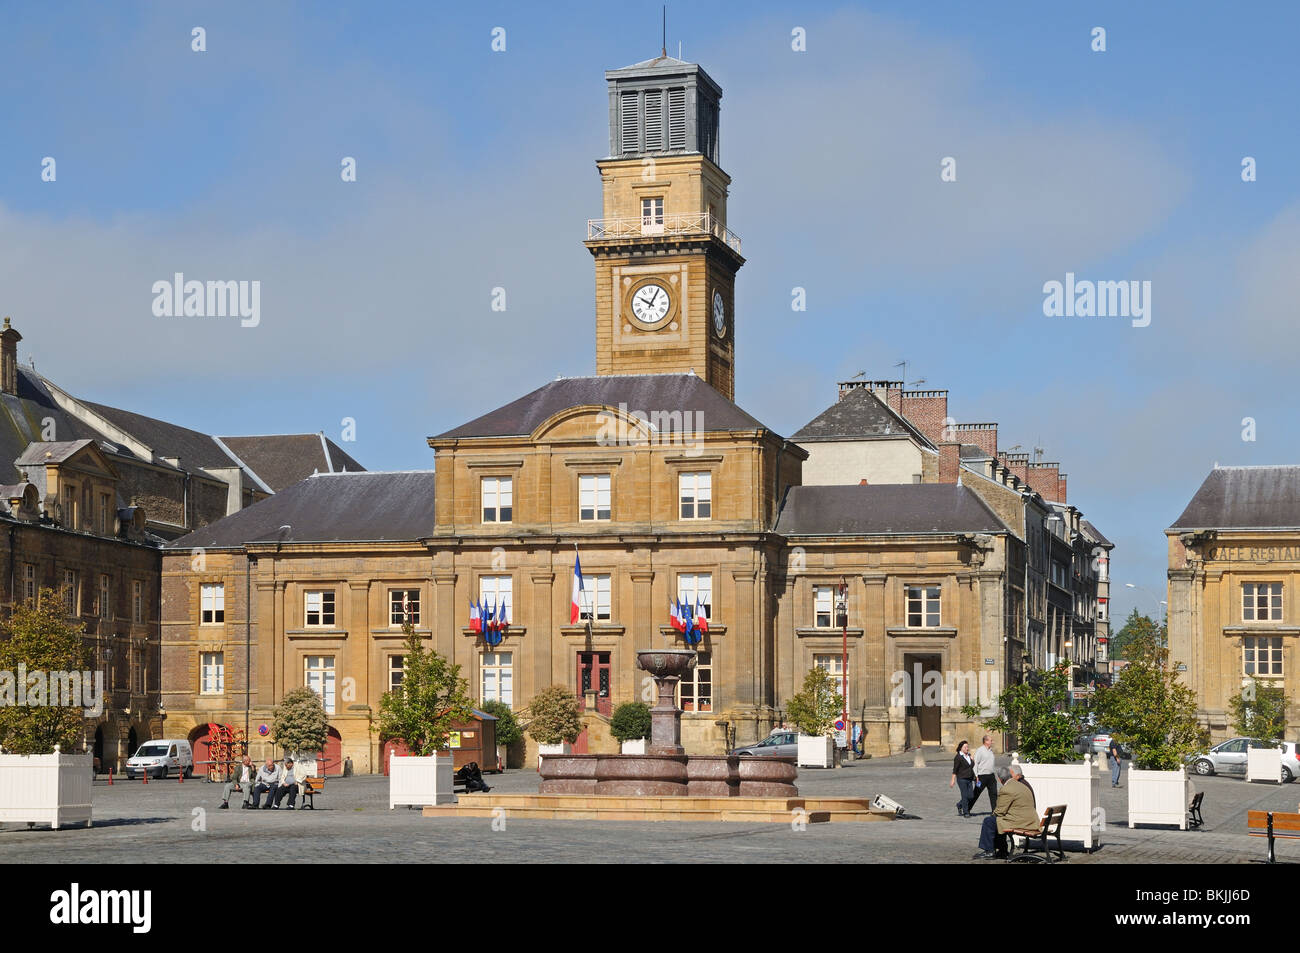 Le Bureau d'information touristique avec des drapeaux en place Ducale Charleville-mézières Ardennes France Banque D'Images